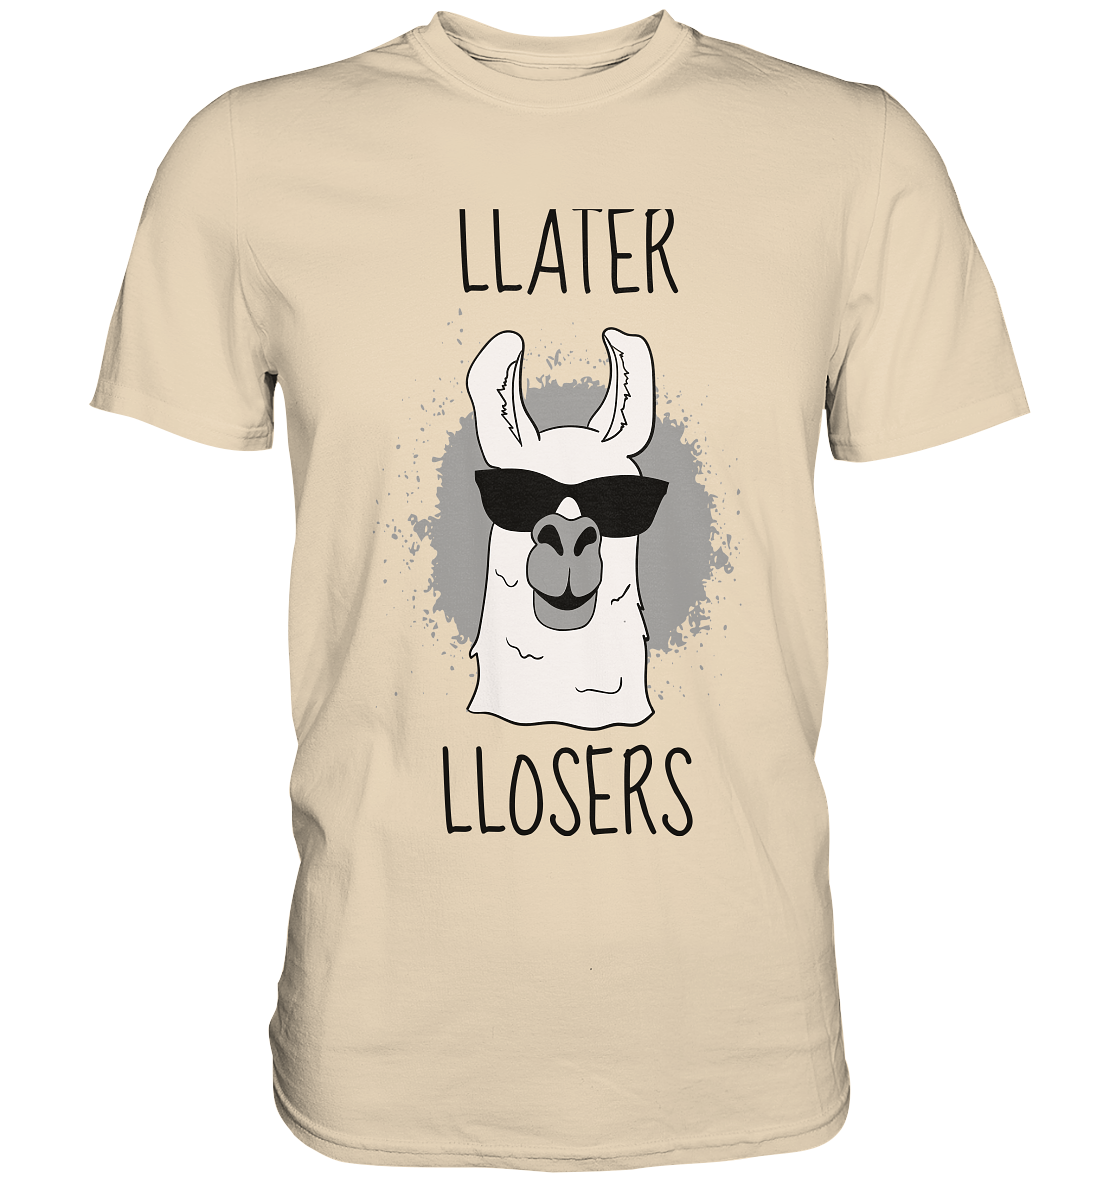 Later Losers. Lama - Unisex Premium Shirt